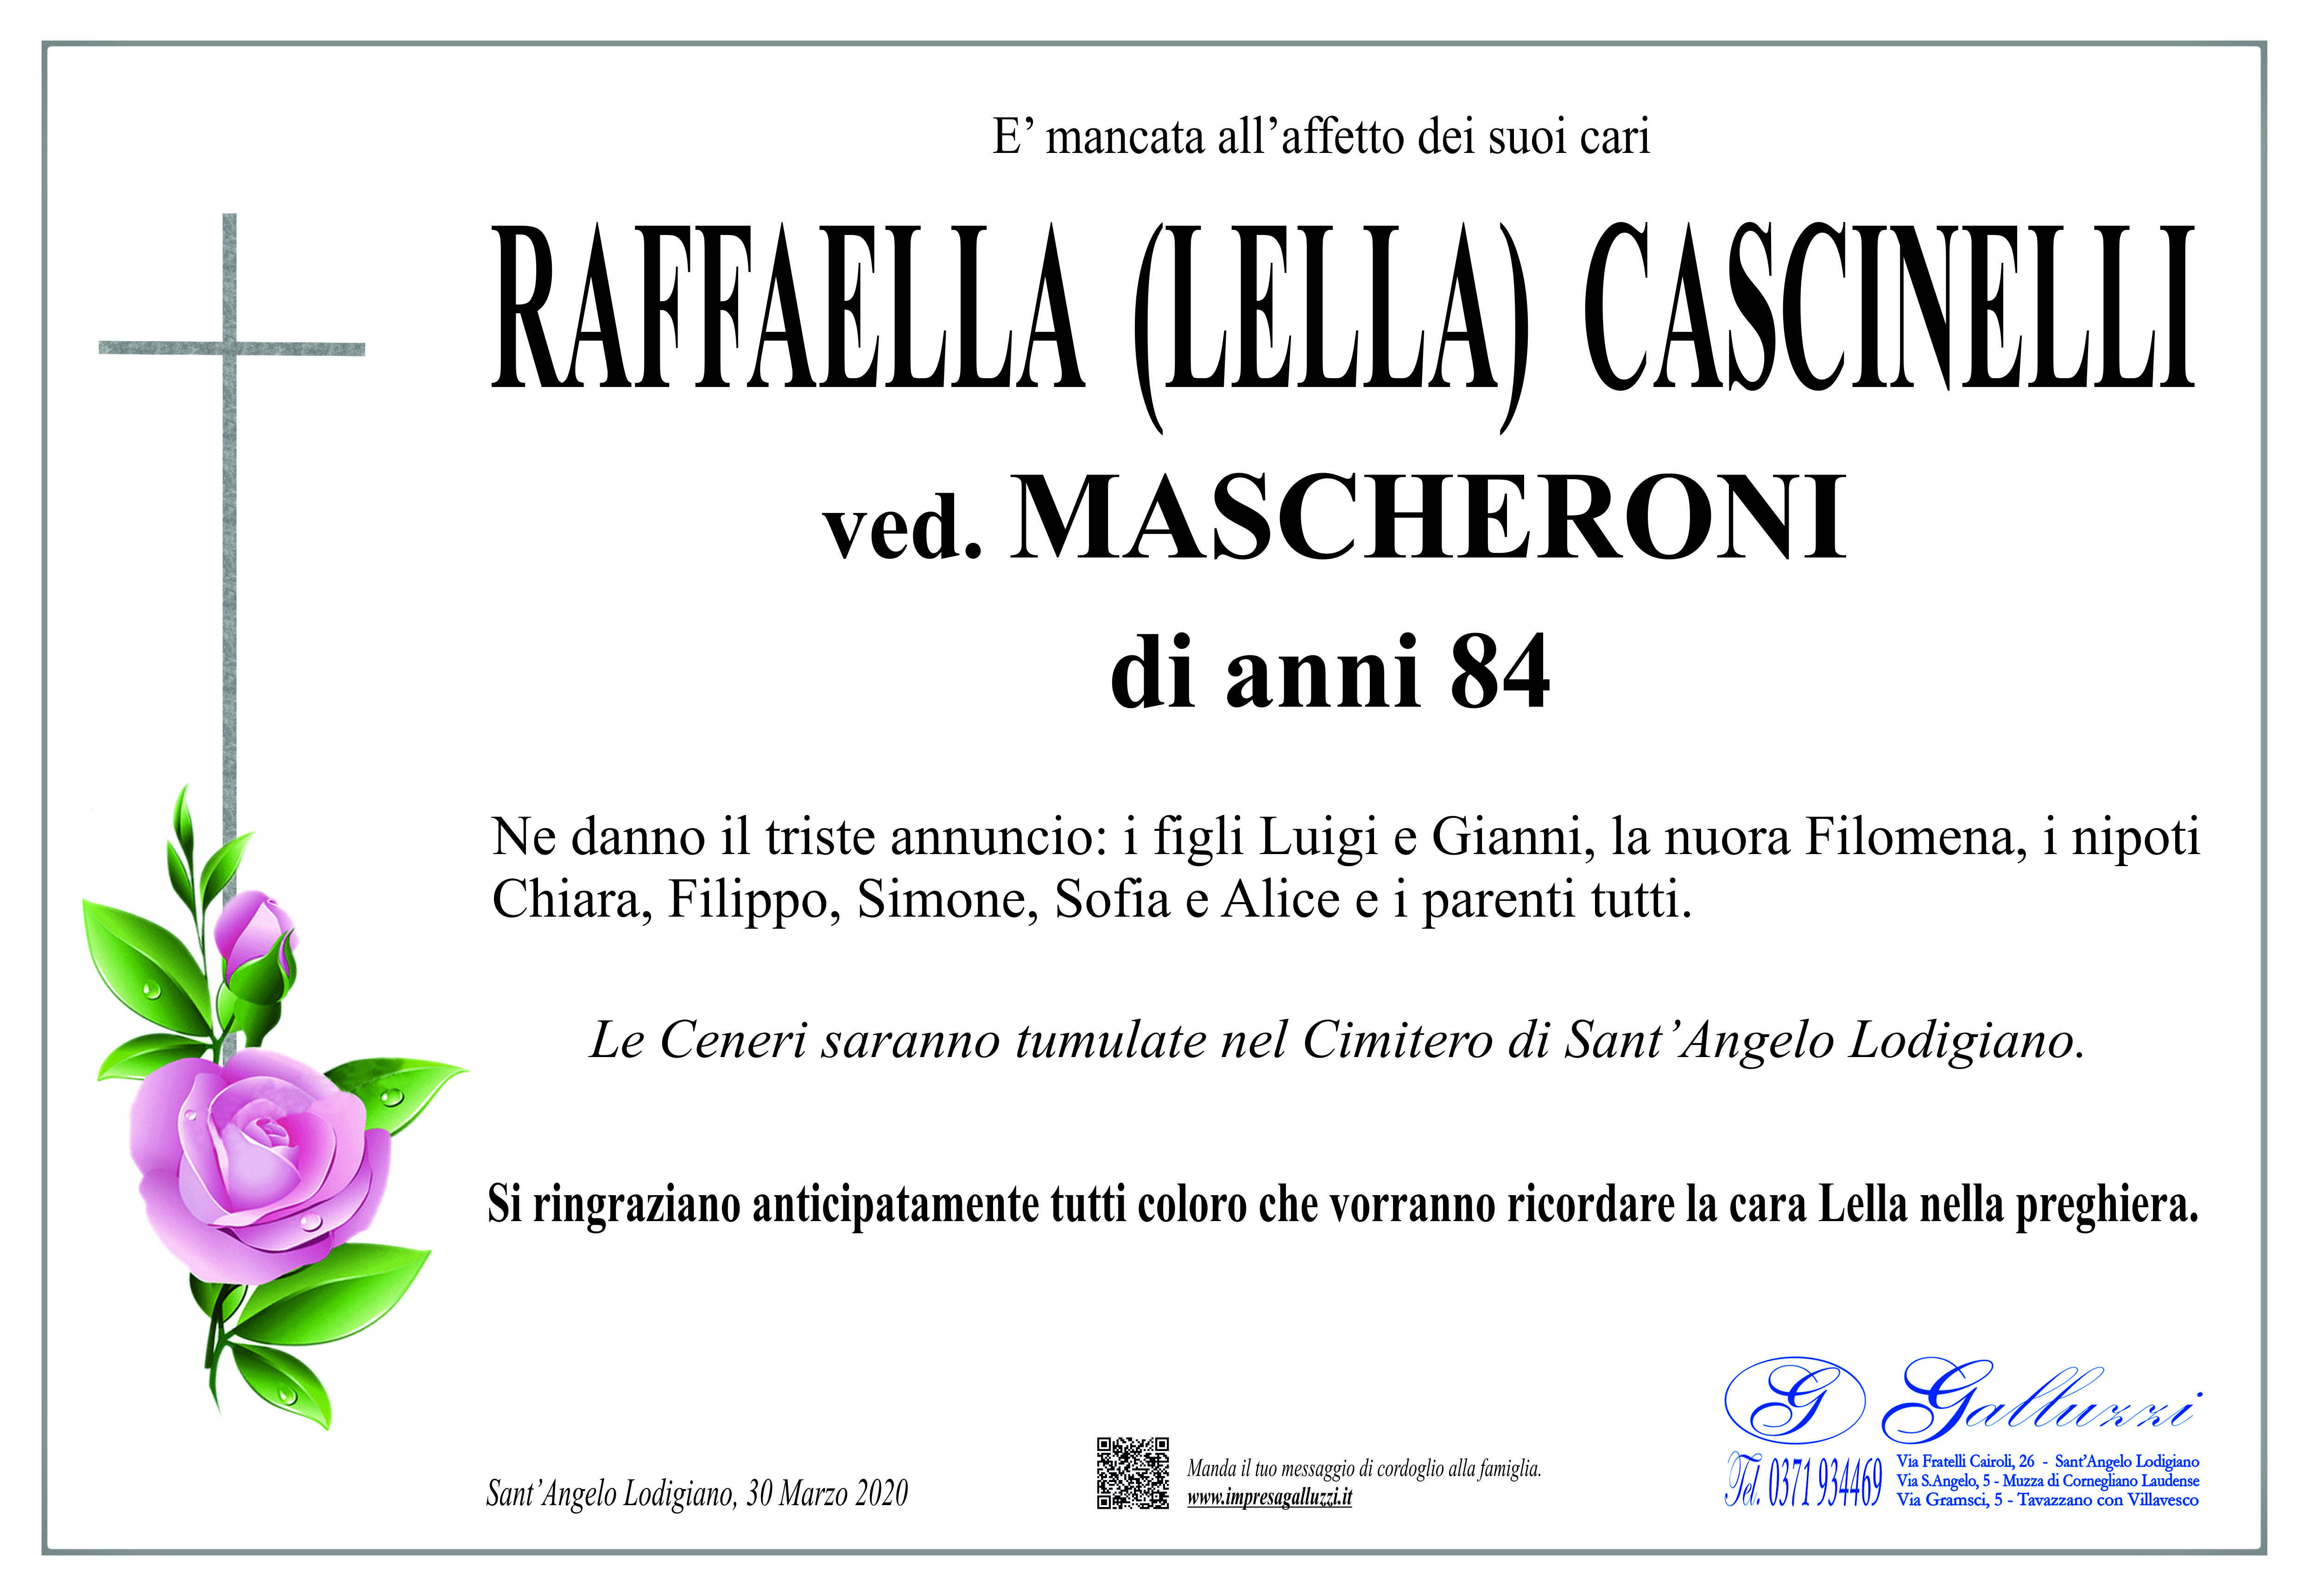 Raffaella Cascinelli